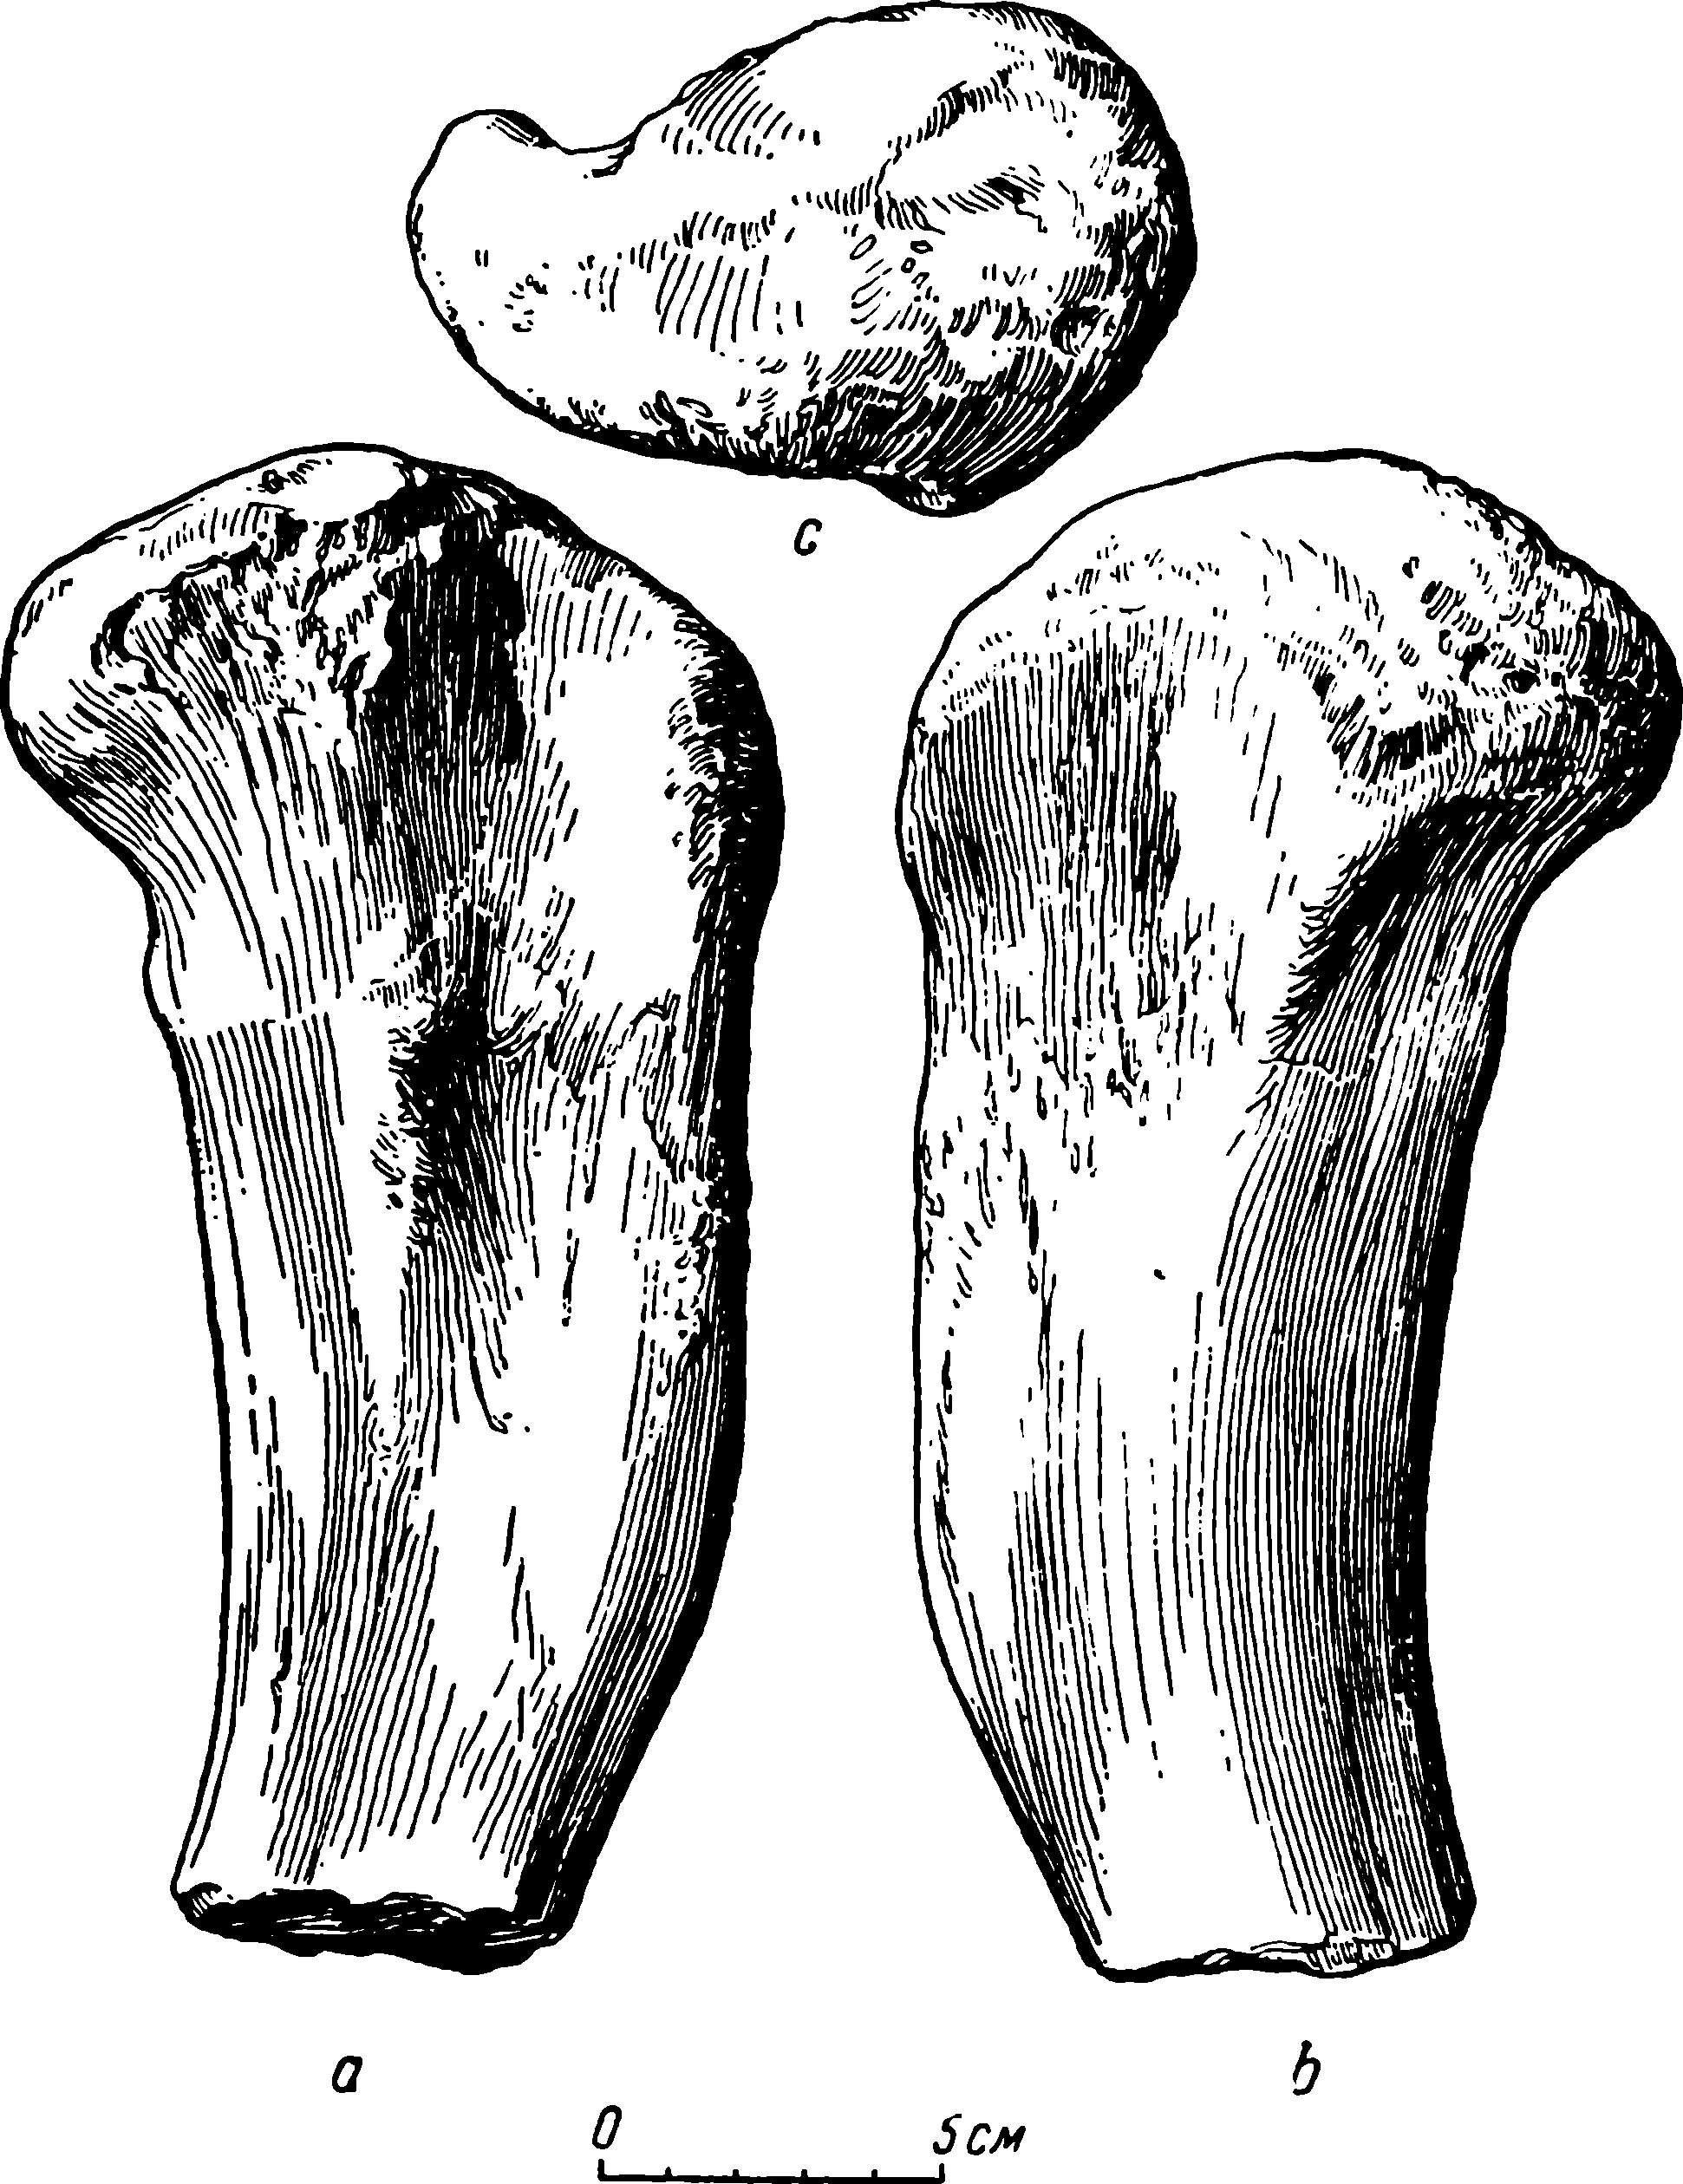 Рис. 28. Deuterosaurus gigas sp. nov. Правая бедренная кость (femur), проксимальная часть, КГУ/ЧМП № 13. a — задневентральная сторона; b — переднедорсальная сторона; c — головка бедра (caput femoris) сверху